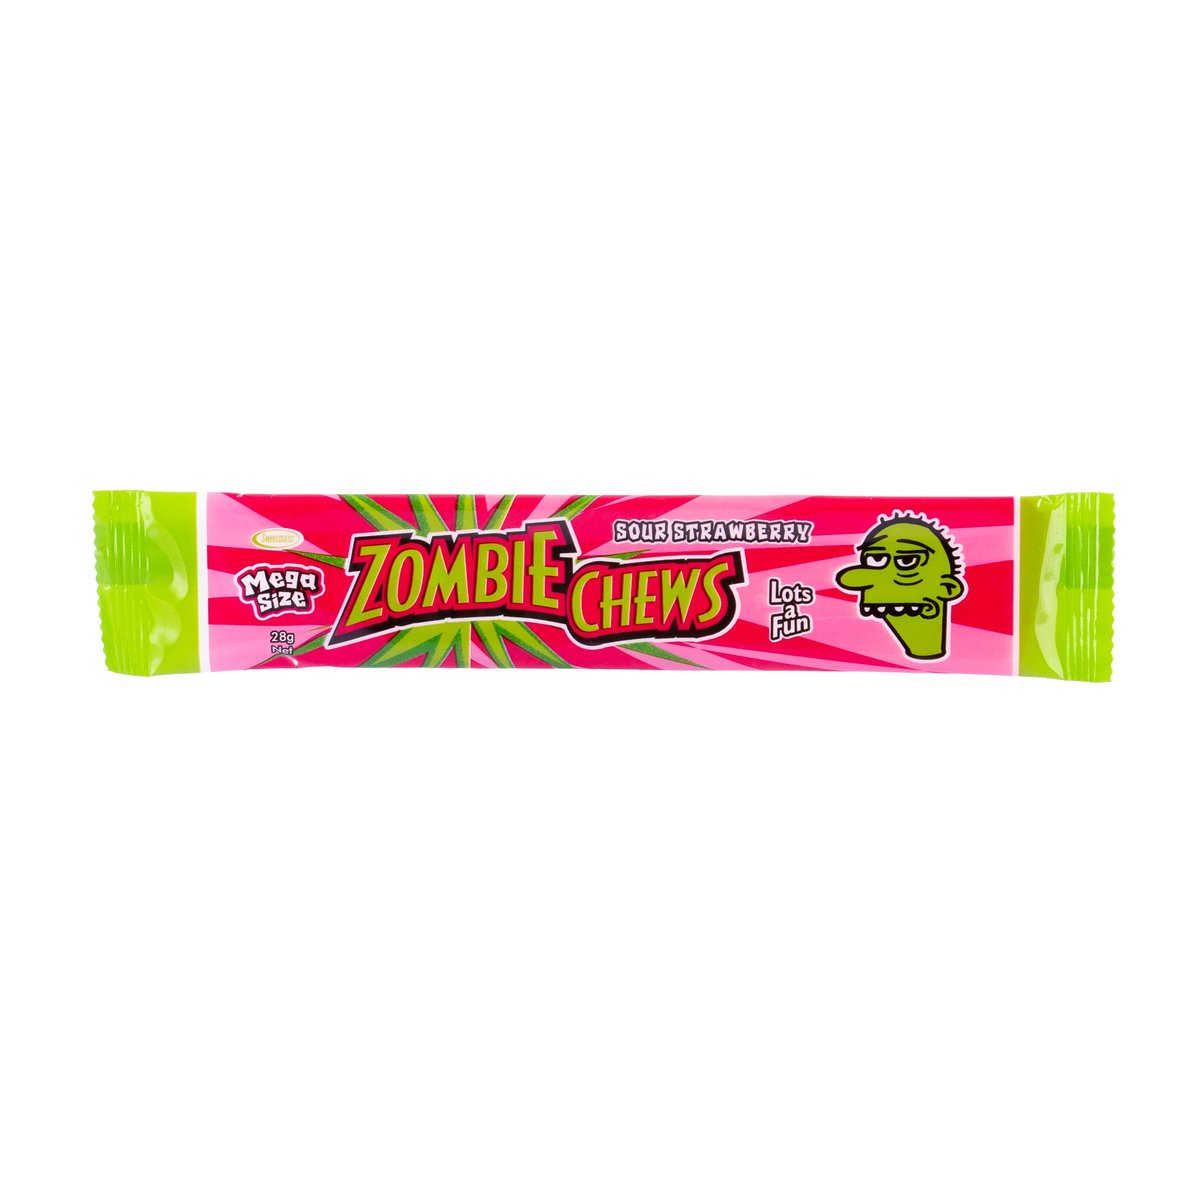 Zombie Chews Sour Strawberry - 28g